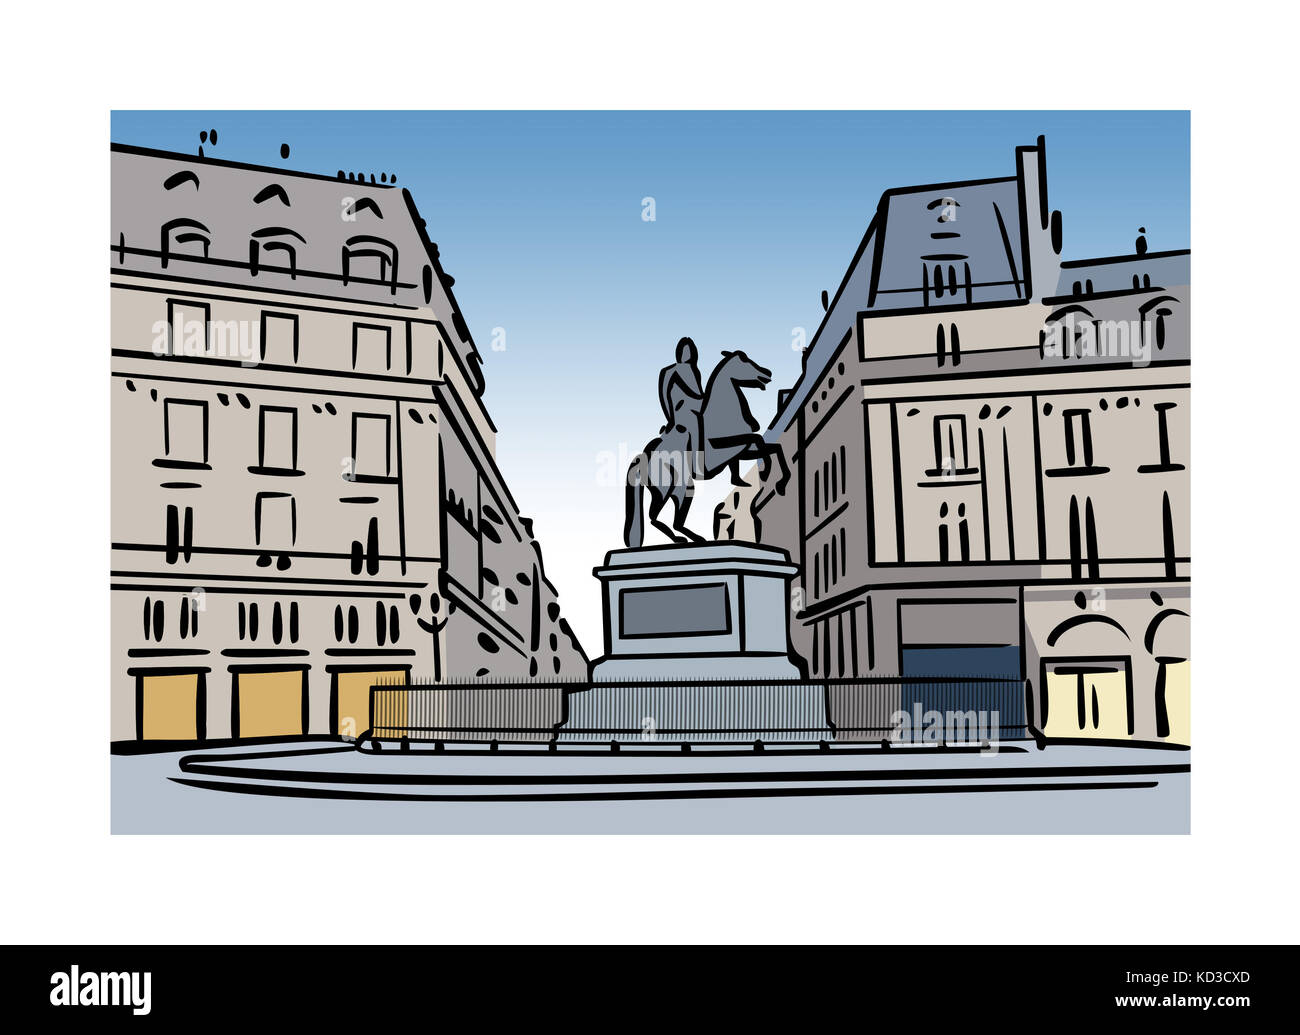 Illustration of Place des Victoires, Paris, France Stock Photo